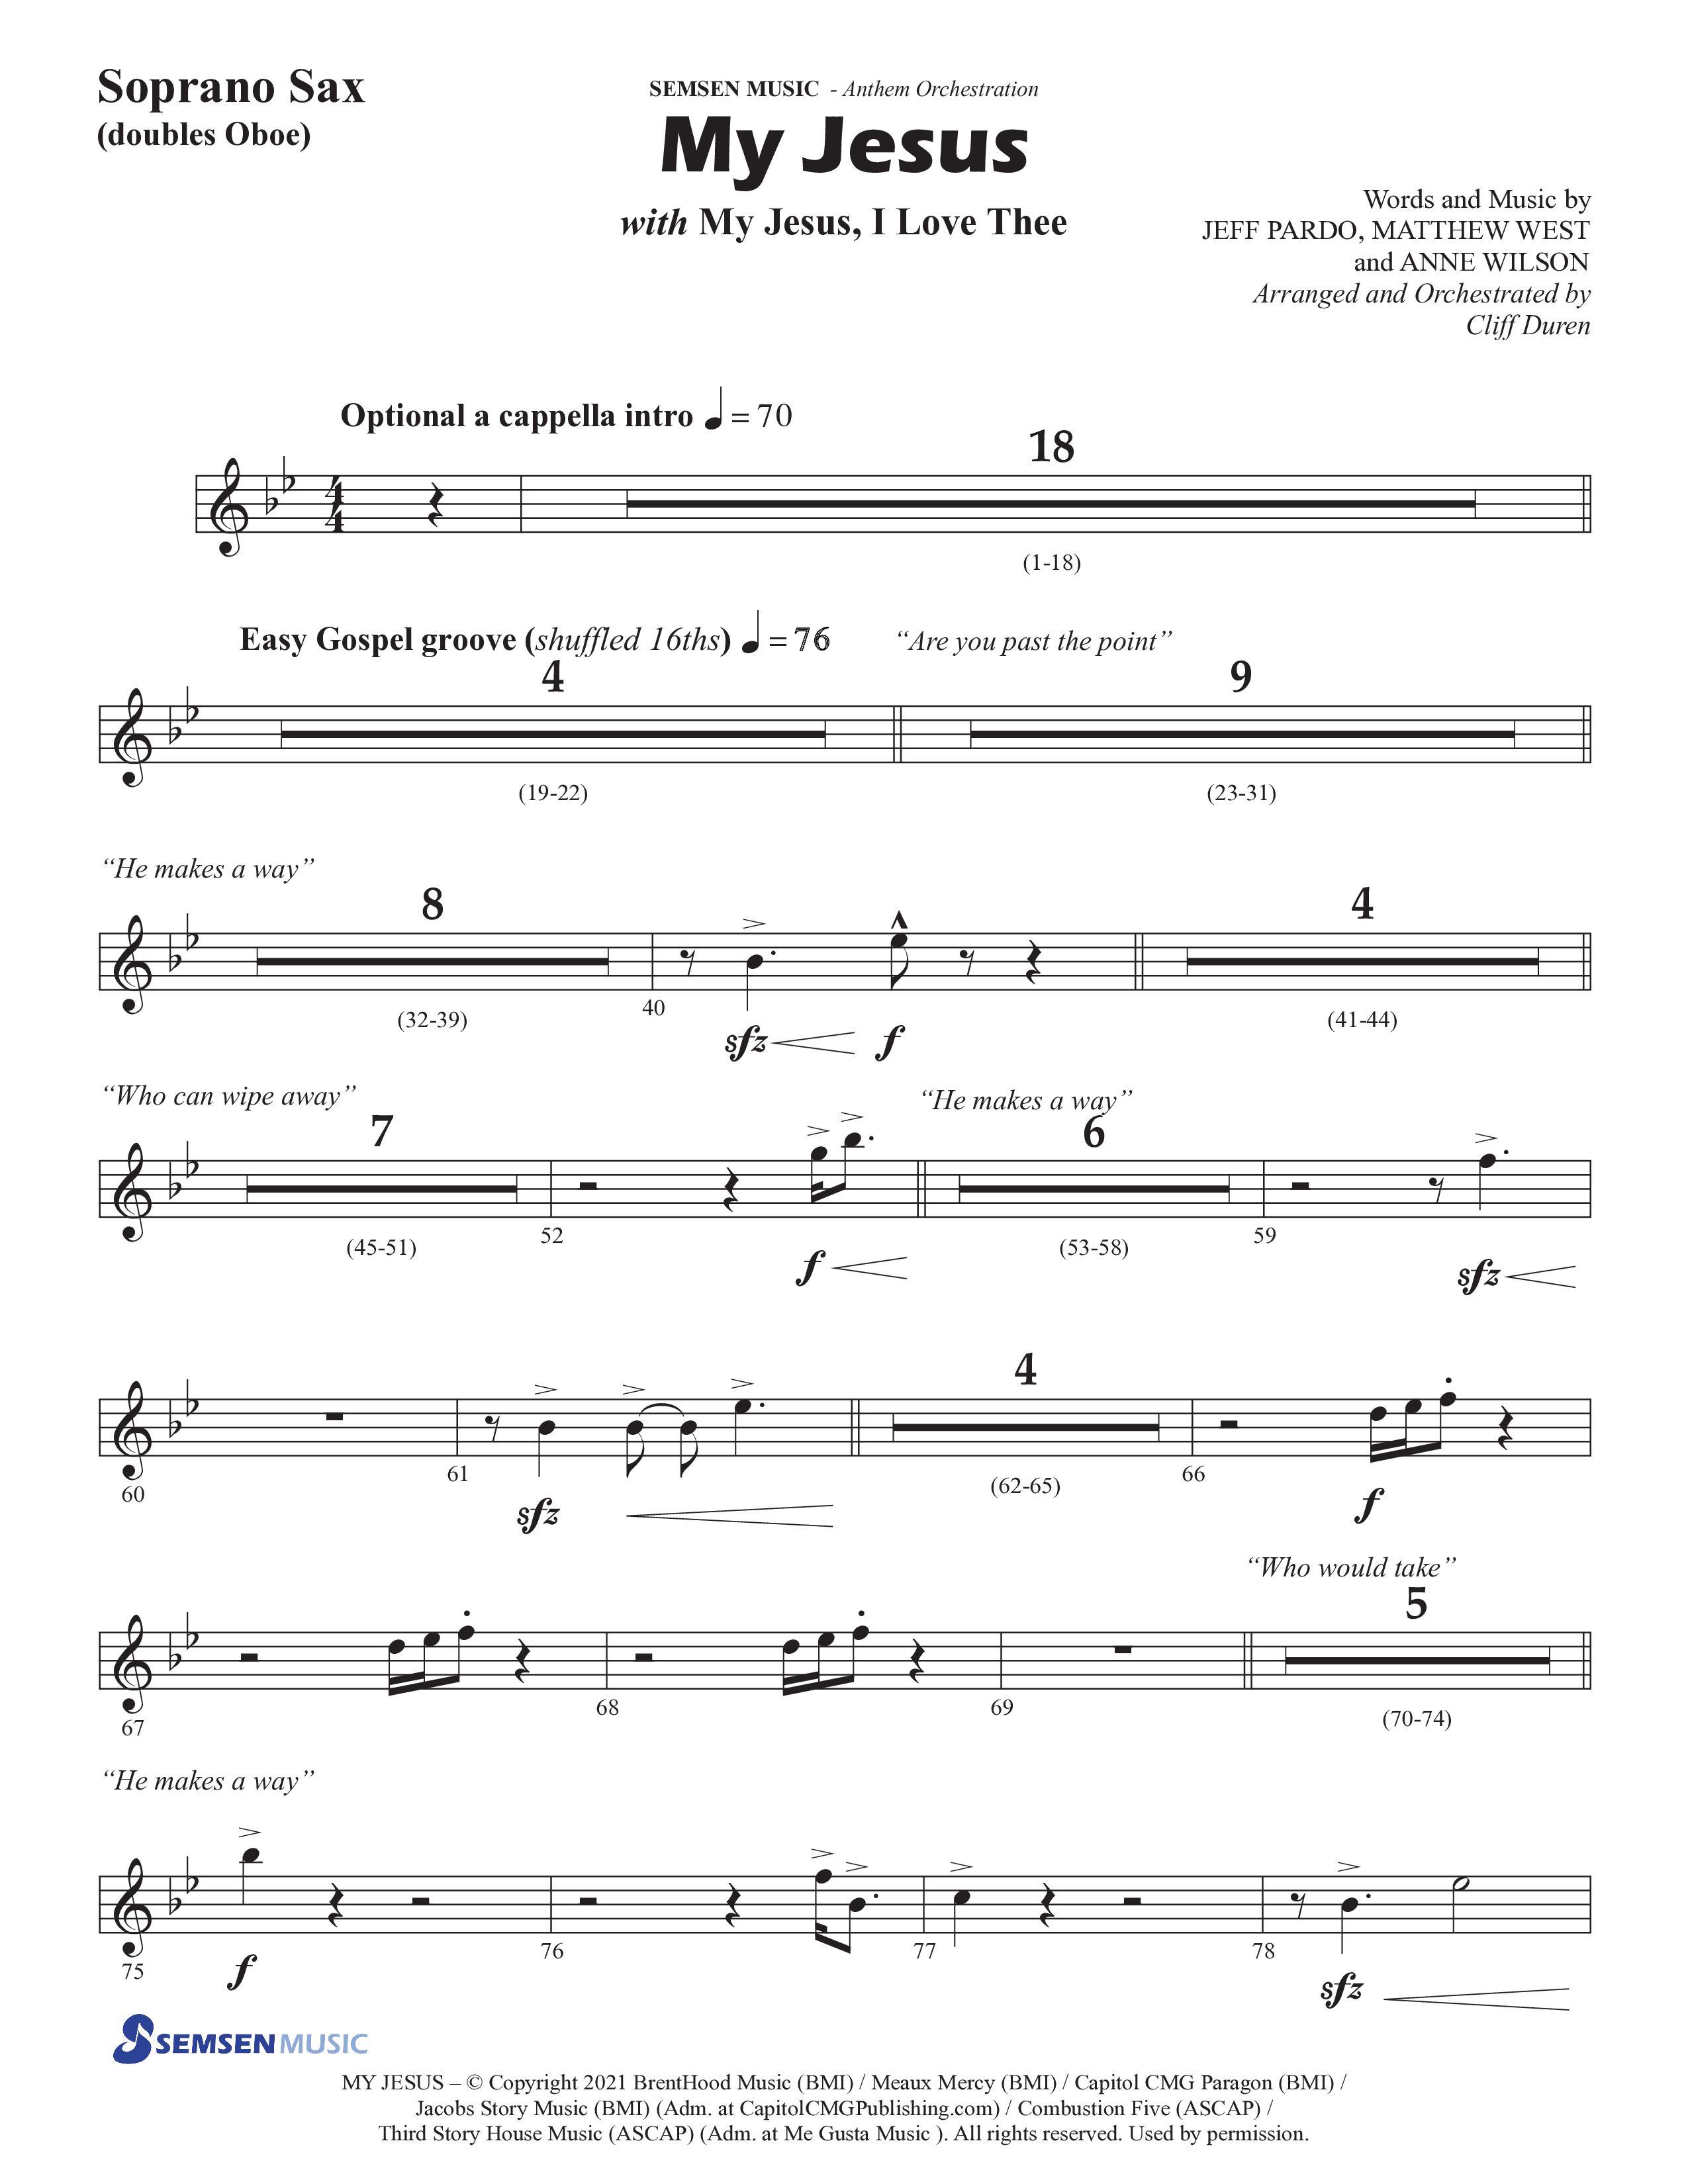 My Jesus (with My Jesus I Love Thee) (Choral Anthem SATB) Soprano Sax (Semsen Music / Arr. Cliff Duren)